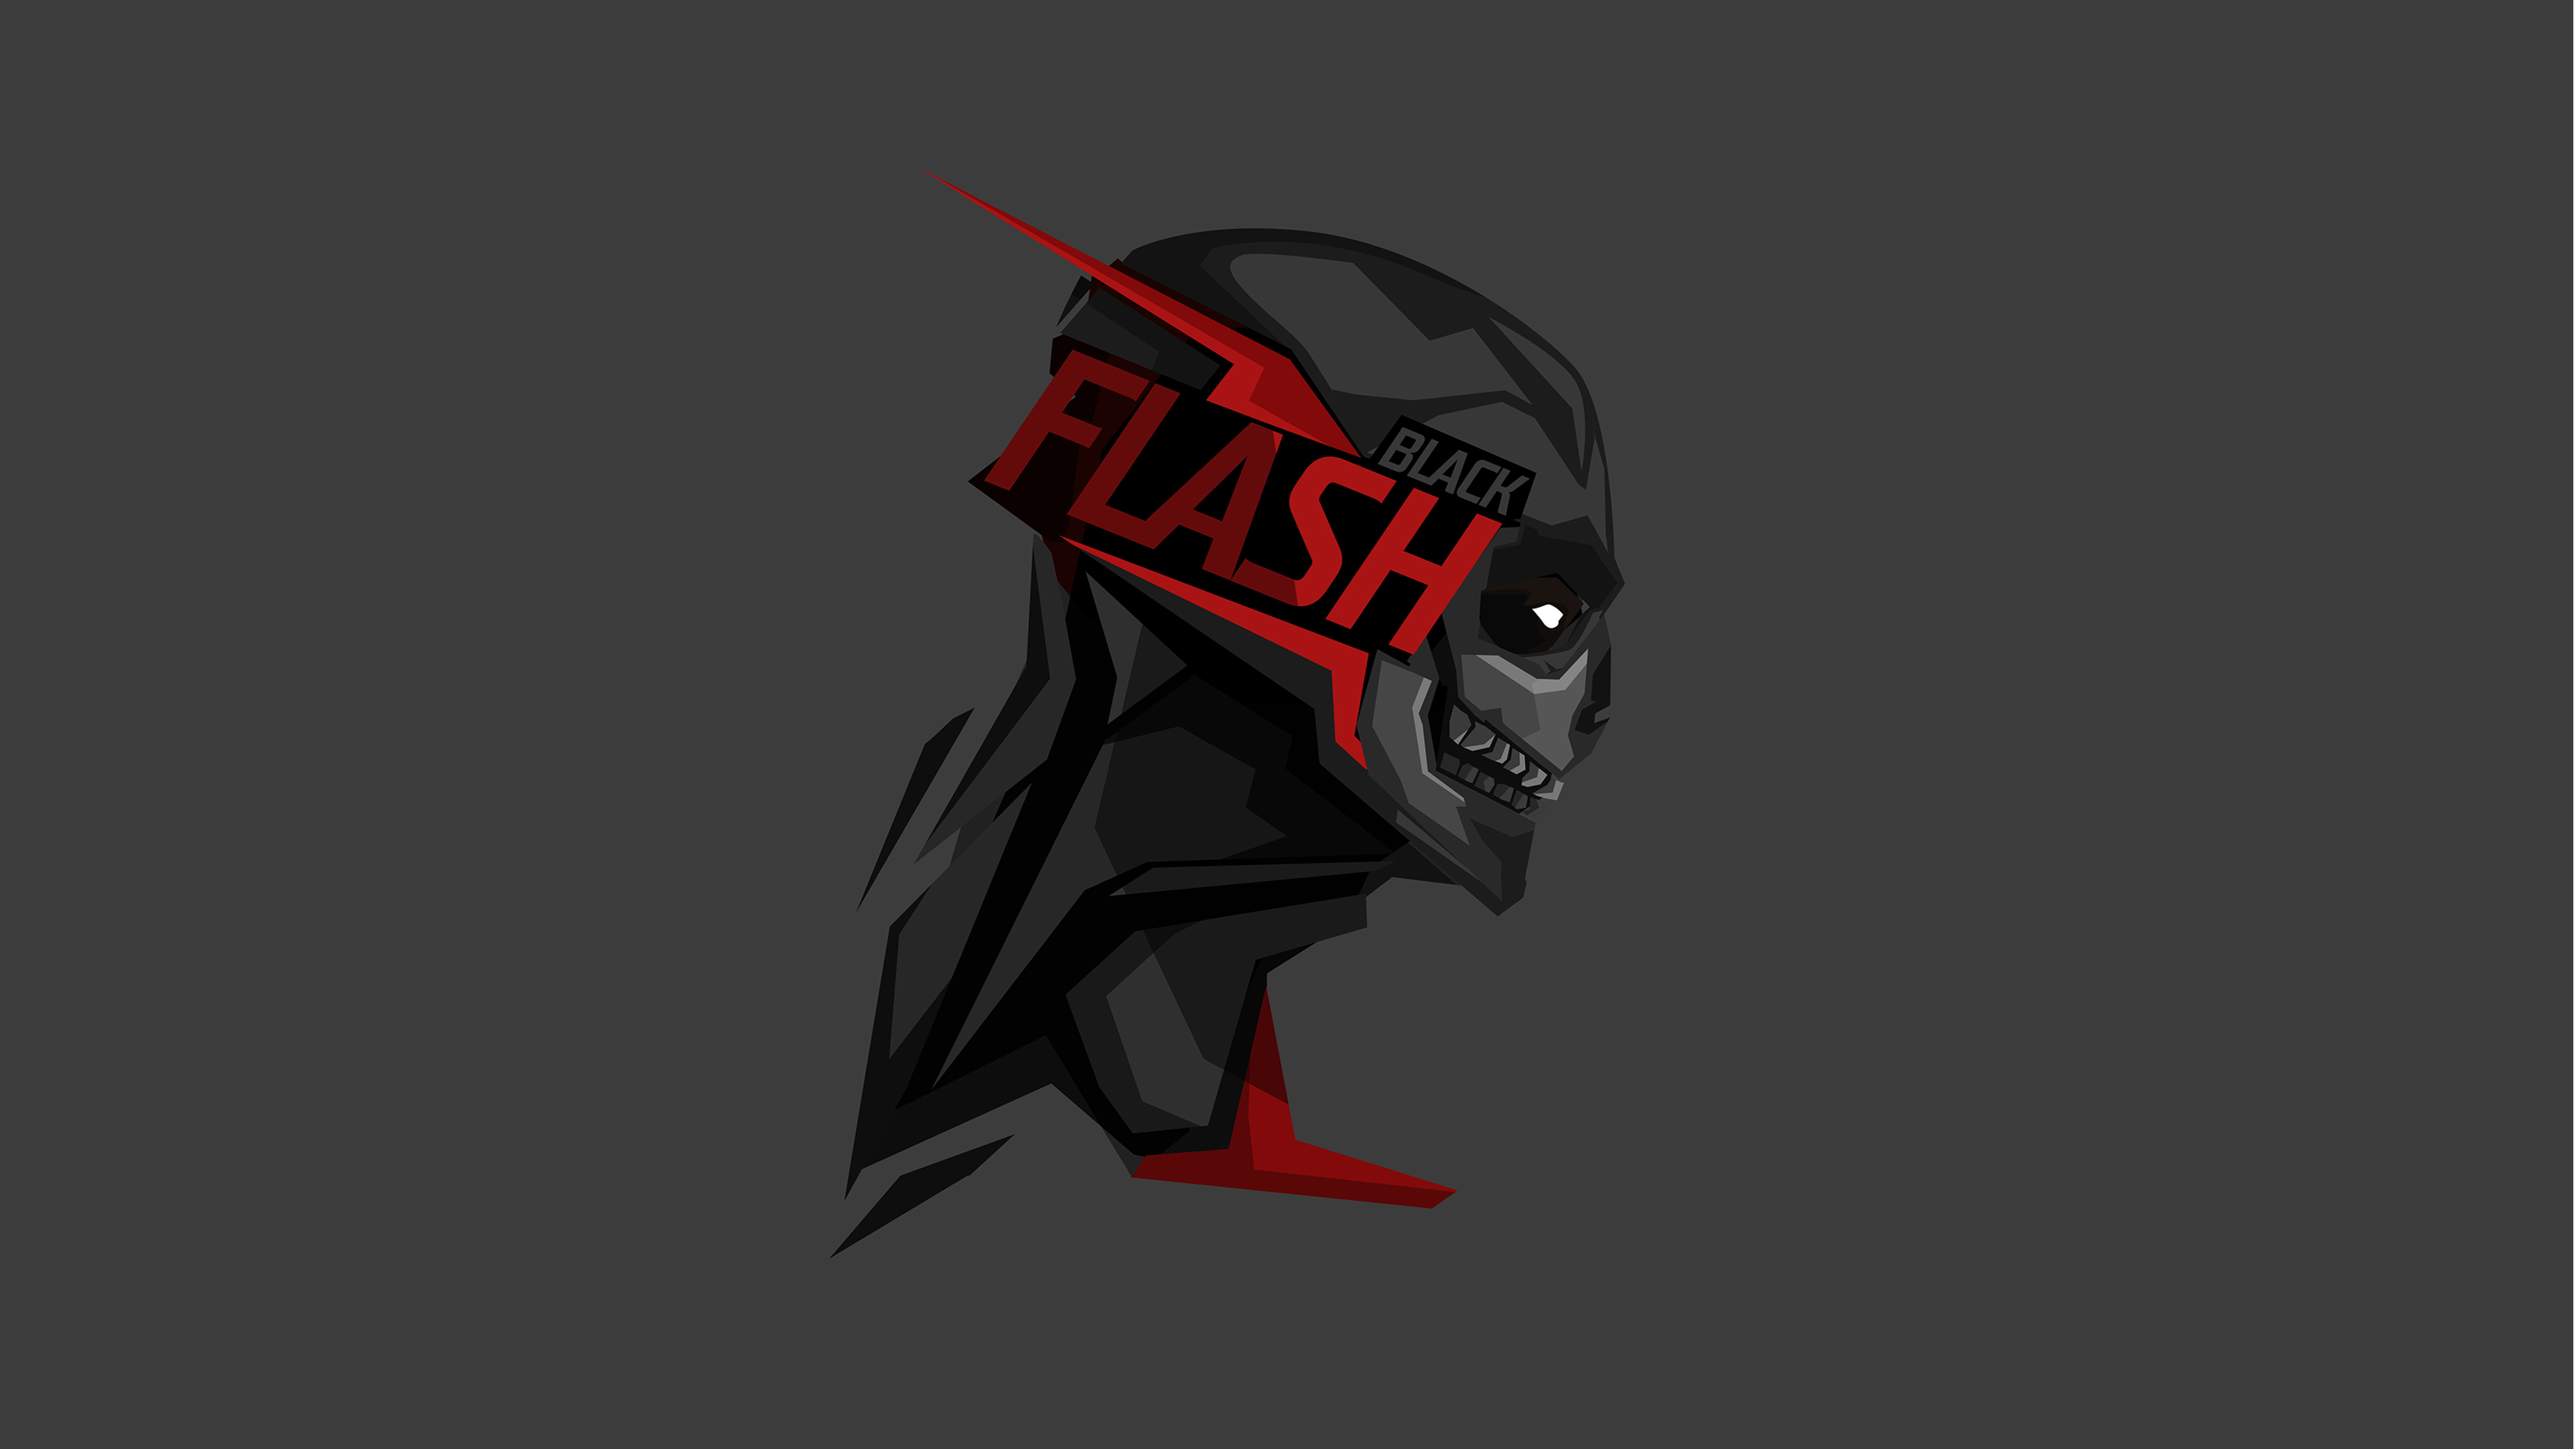 Black Flash 8k Ultra HD Wallpaper by BossLogic